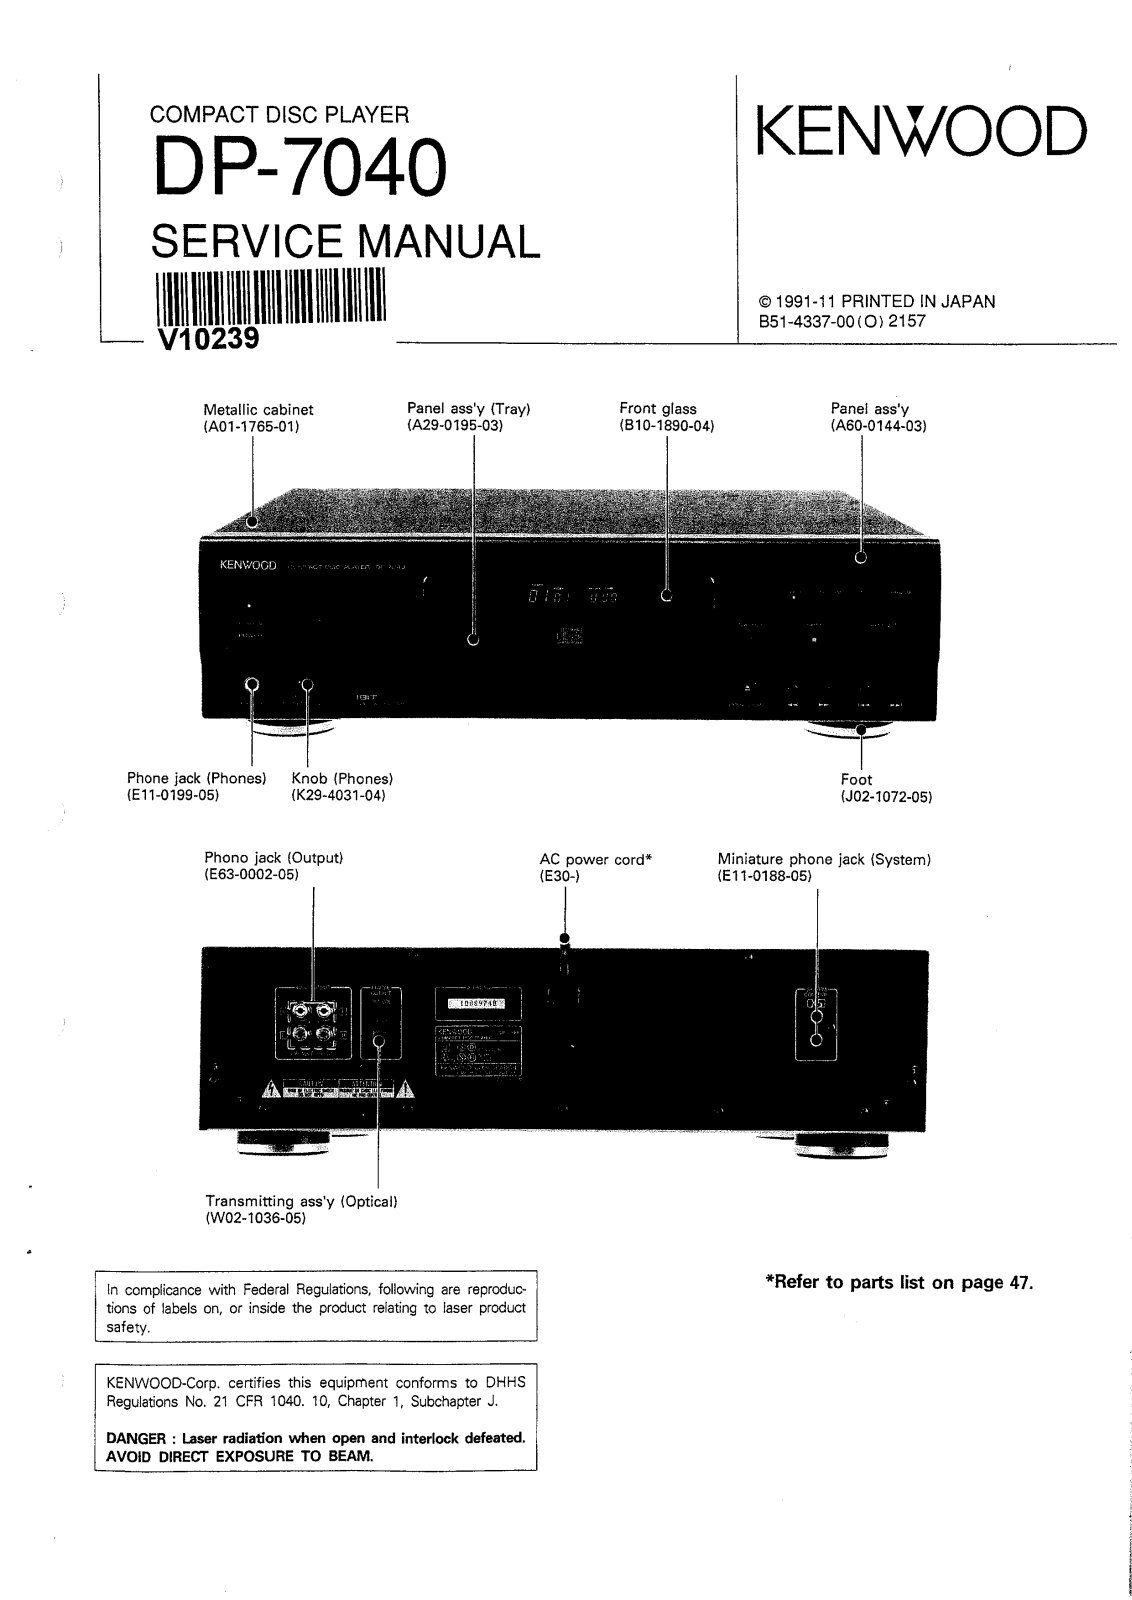 Kenwood DP-7040 Service Manual